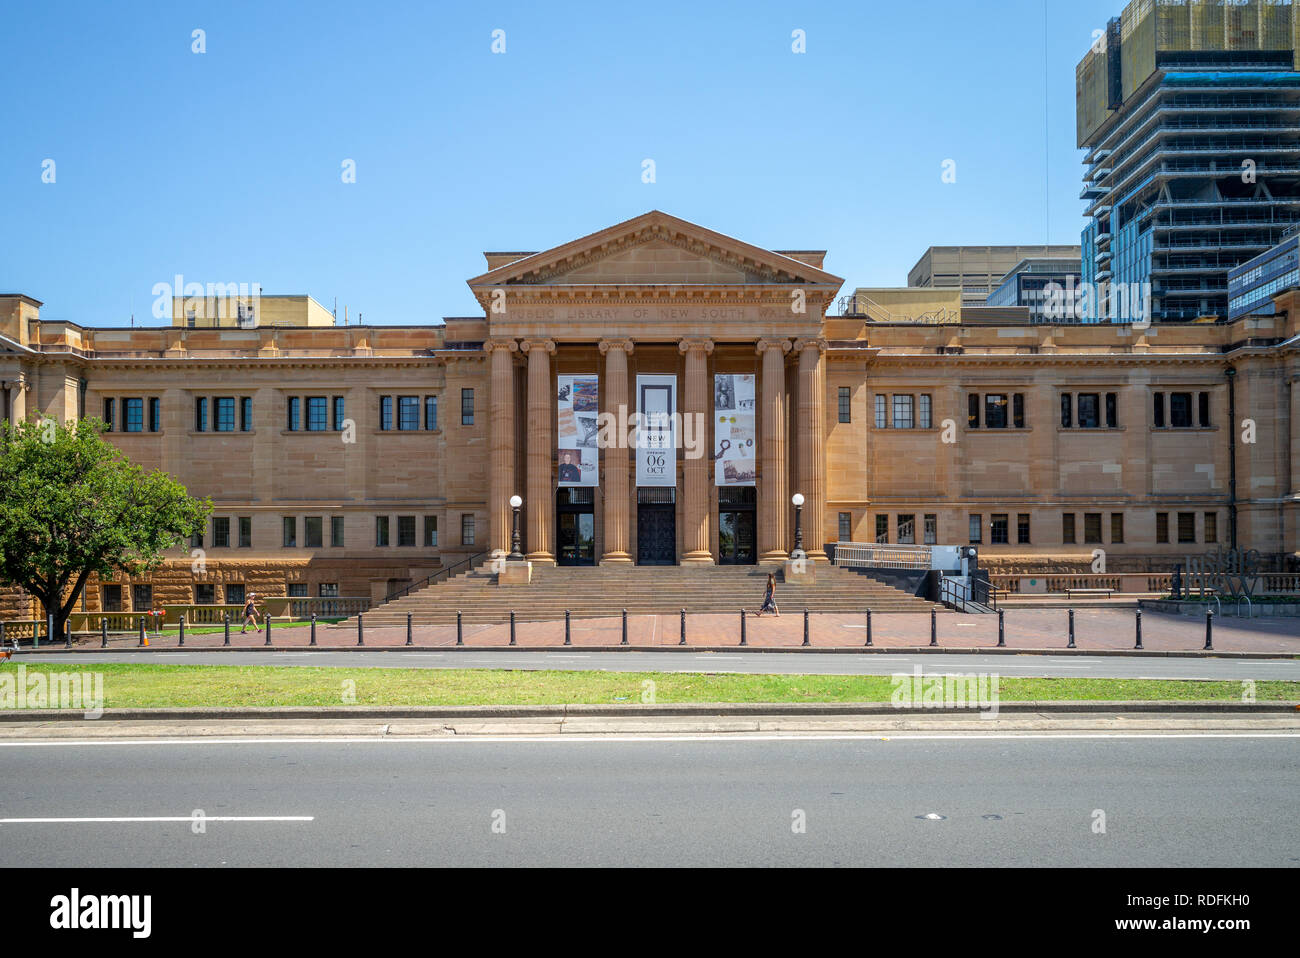 Sydney, Australie - 8 janvier, 2019 : façade de la bibliothèque publique de la Nouvelle Galles du sud, un site classé au patrimoine mondial de grandes collections spéciales, de référence et de recherche Banque D'Images